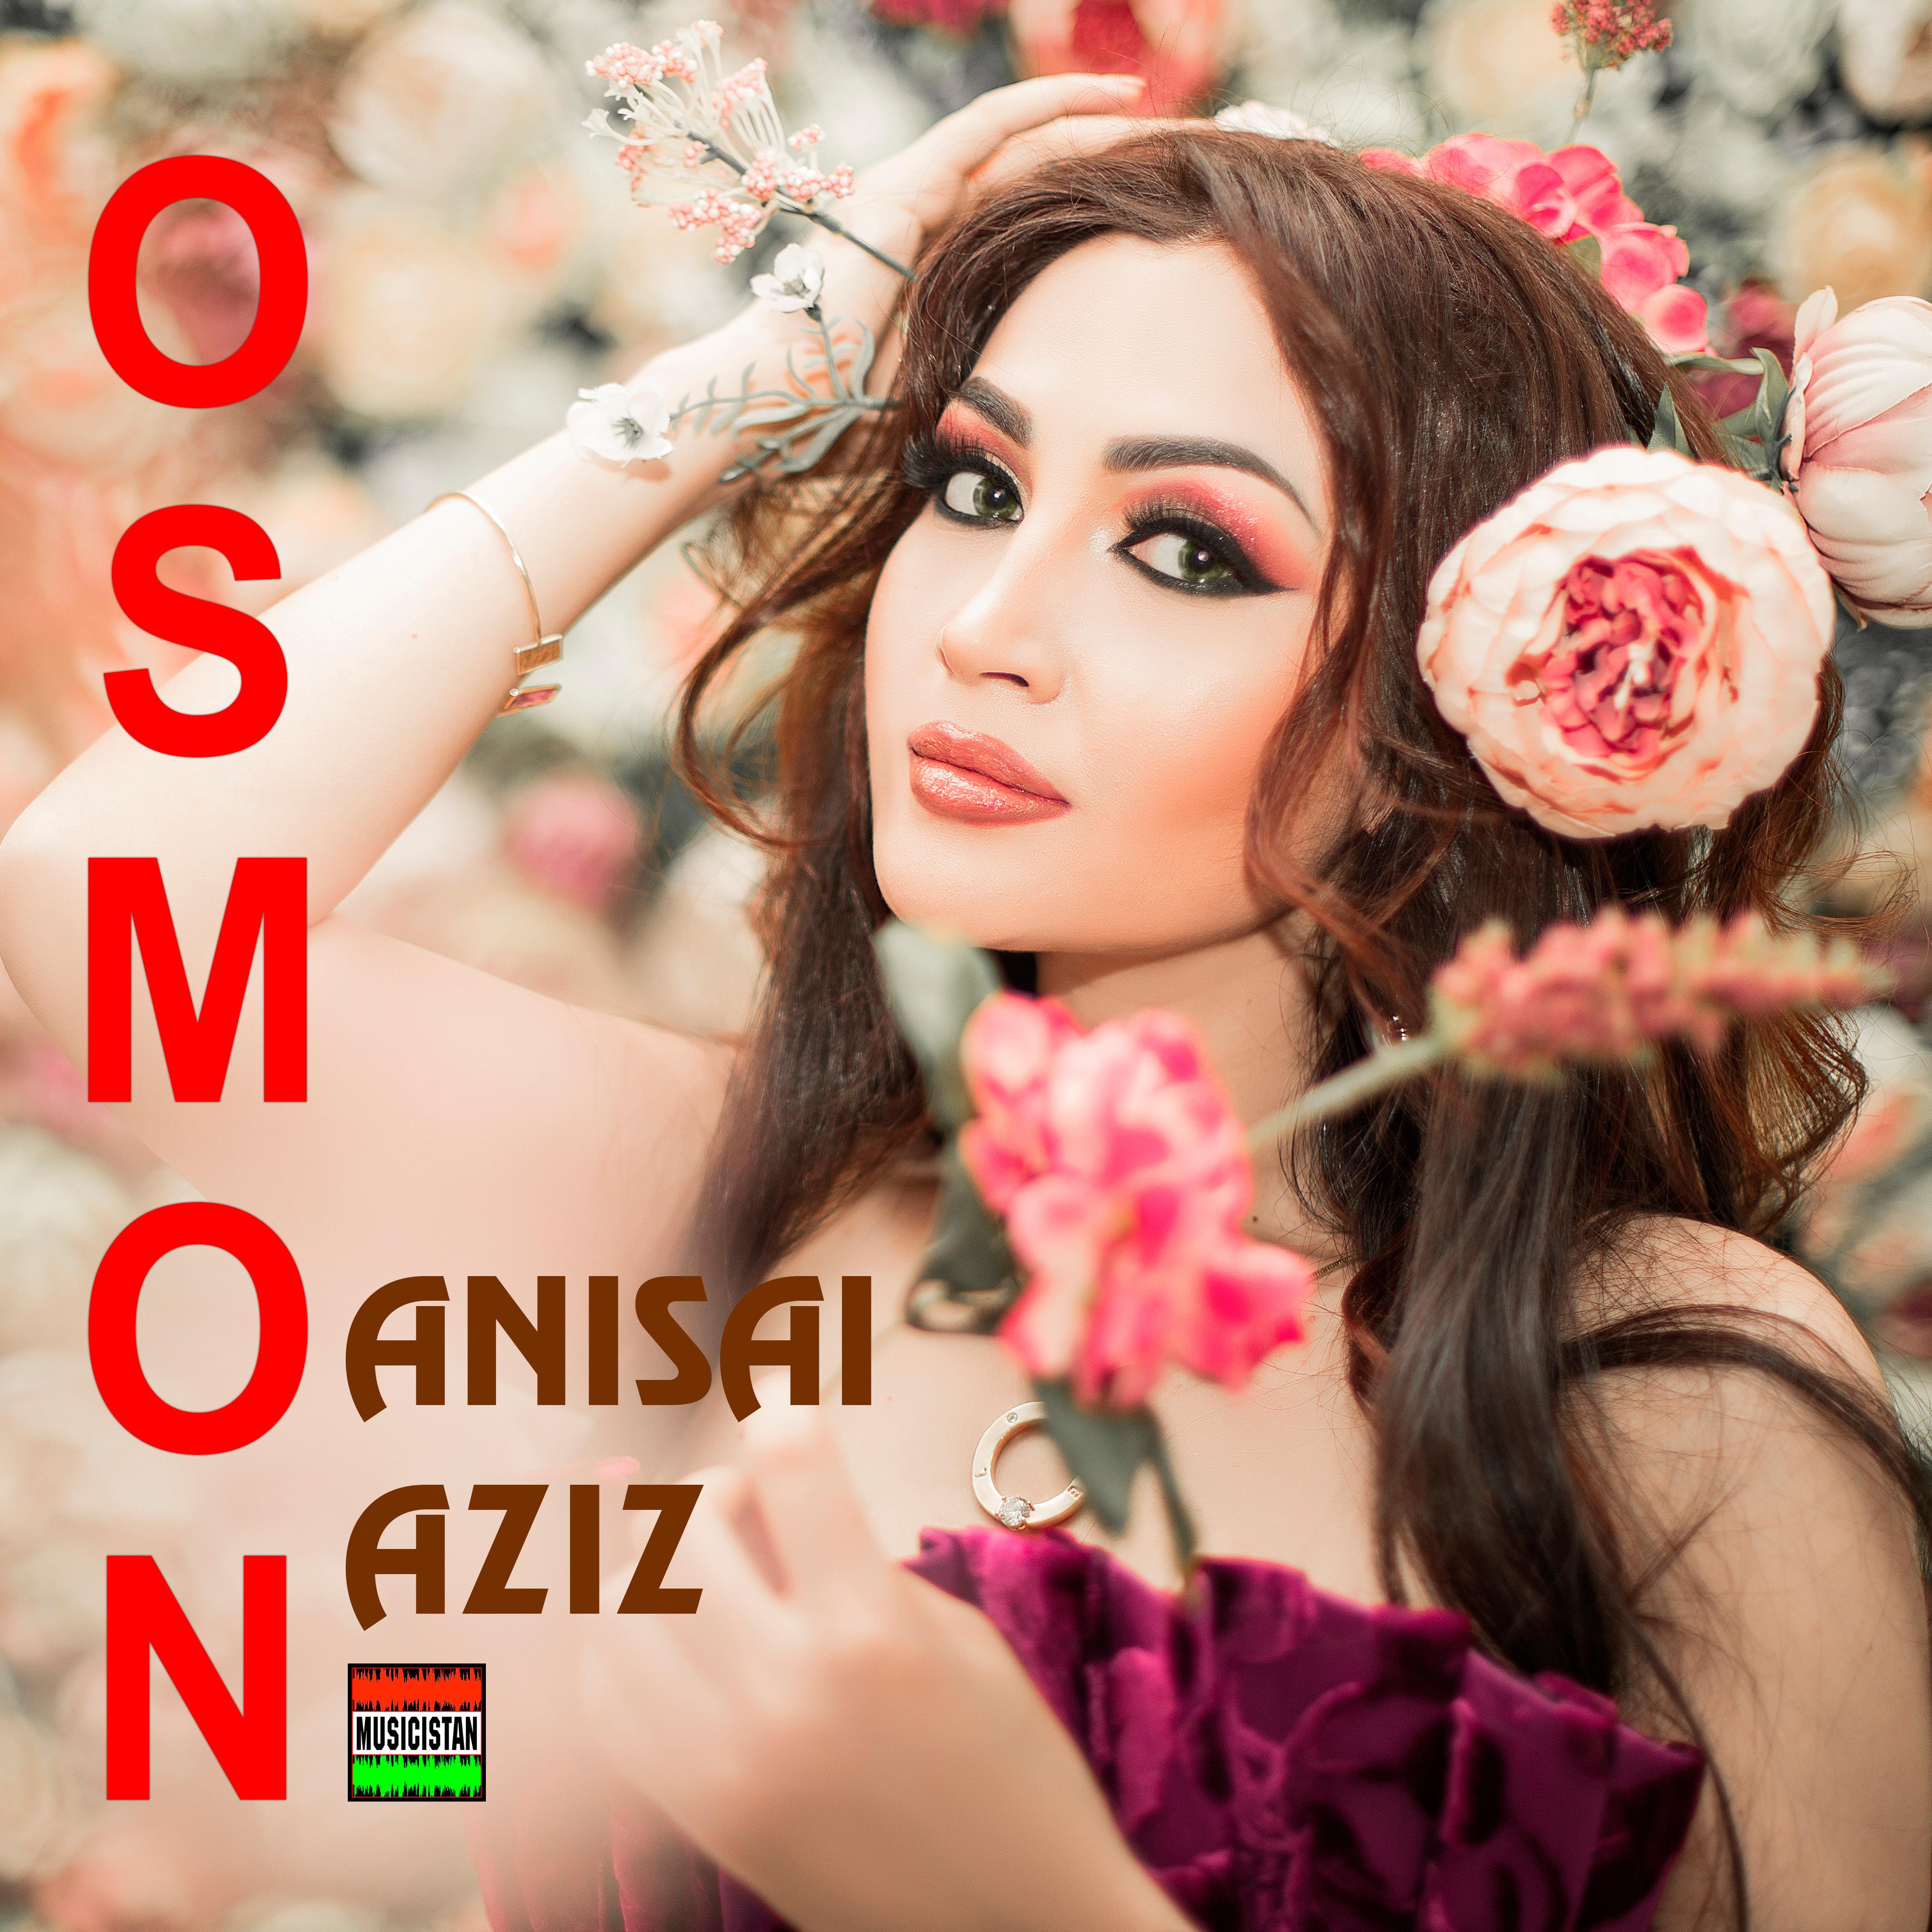 Постер альбома Osmon